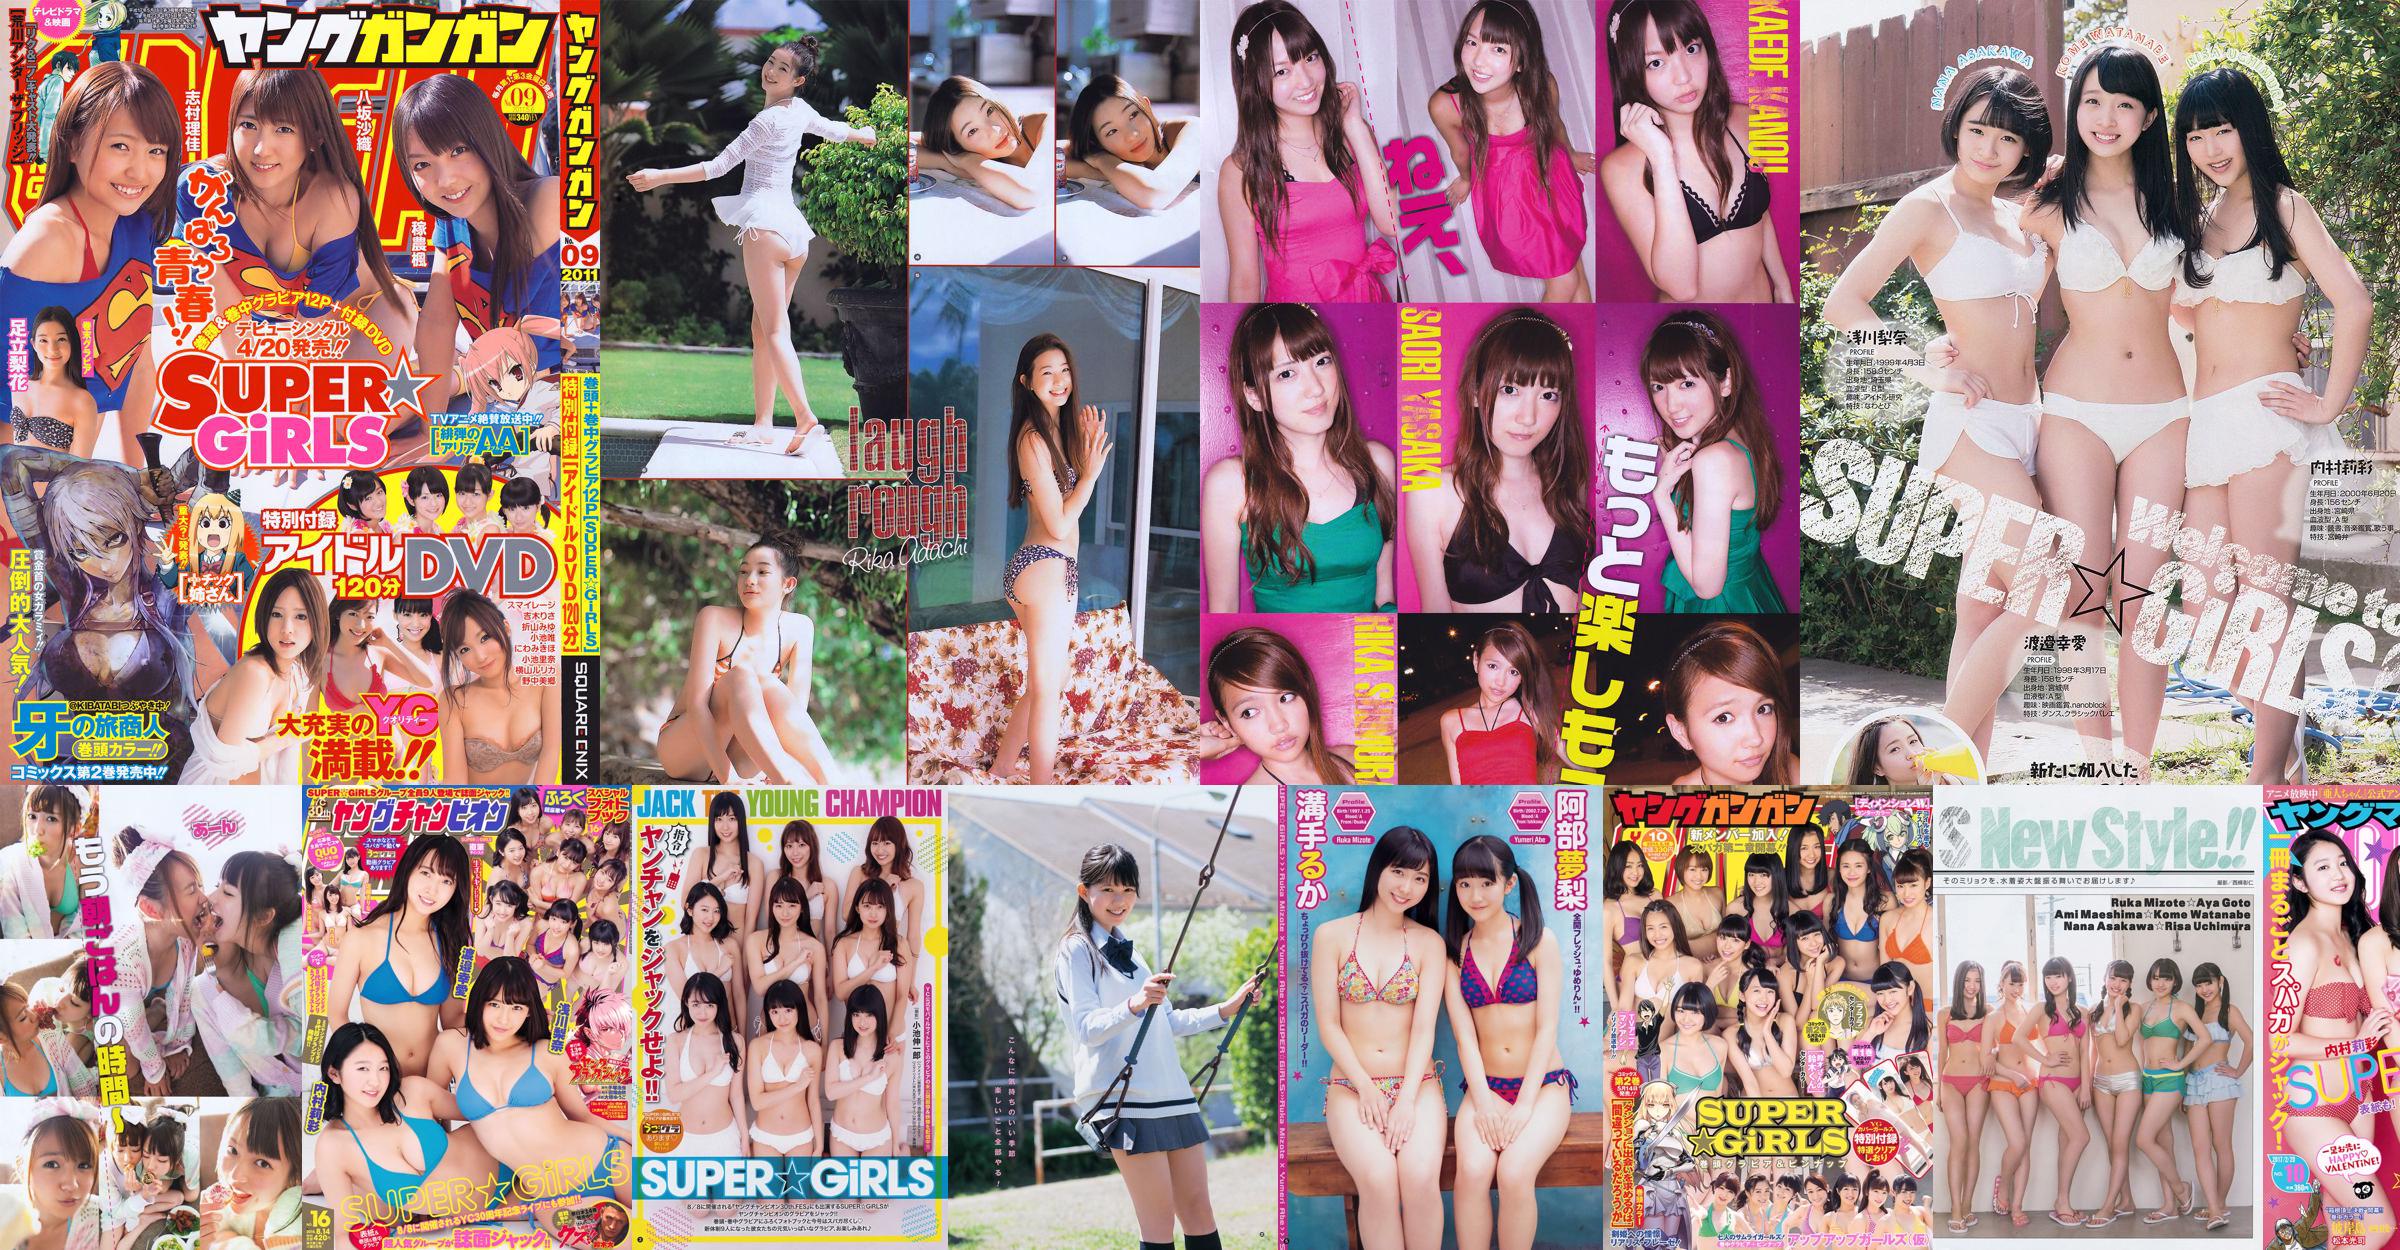 [Молодой Ганган] SUPER ☆ GiRLS Момосе Мисаки 2011 №14 Photo Magazine No.0138f9 Страница 3